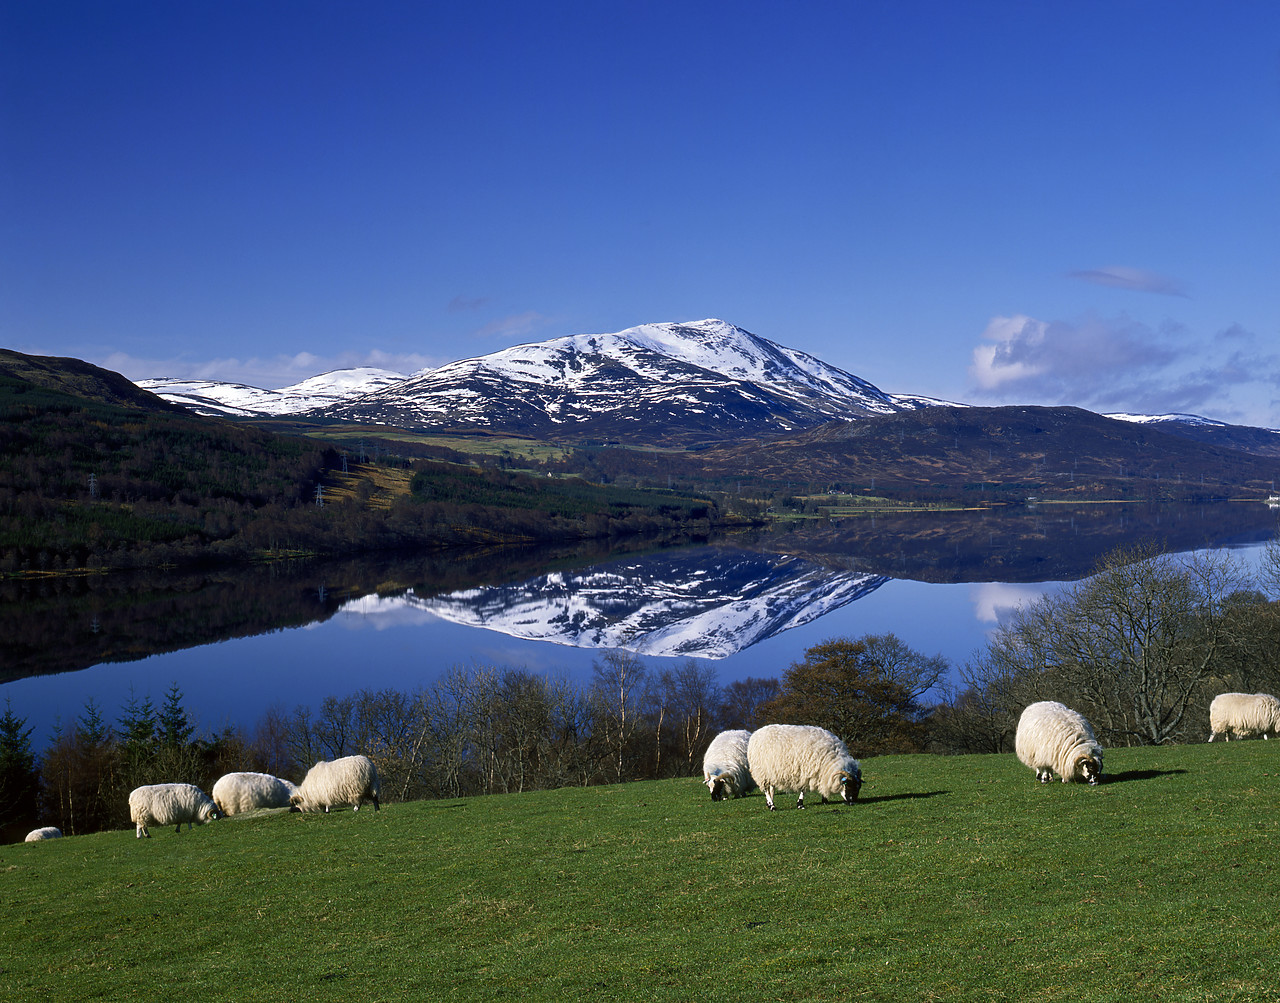 #891992-2 - Schiehallion & Grazing Sheep, Loch Tummel, Tayside Region, Scotland